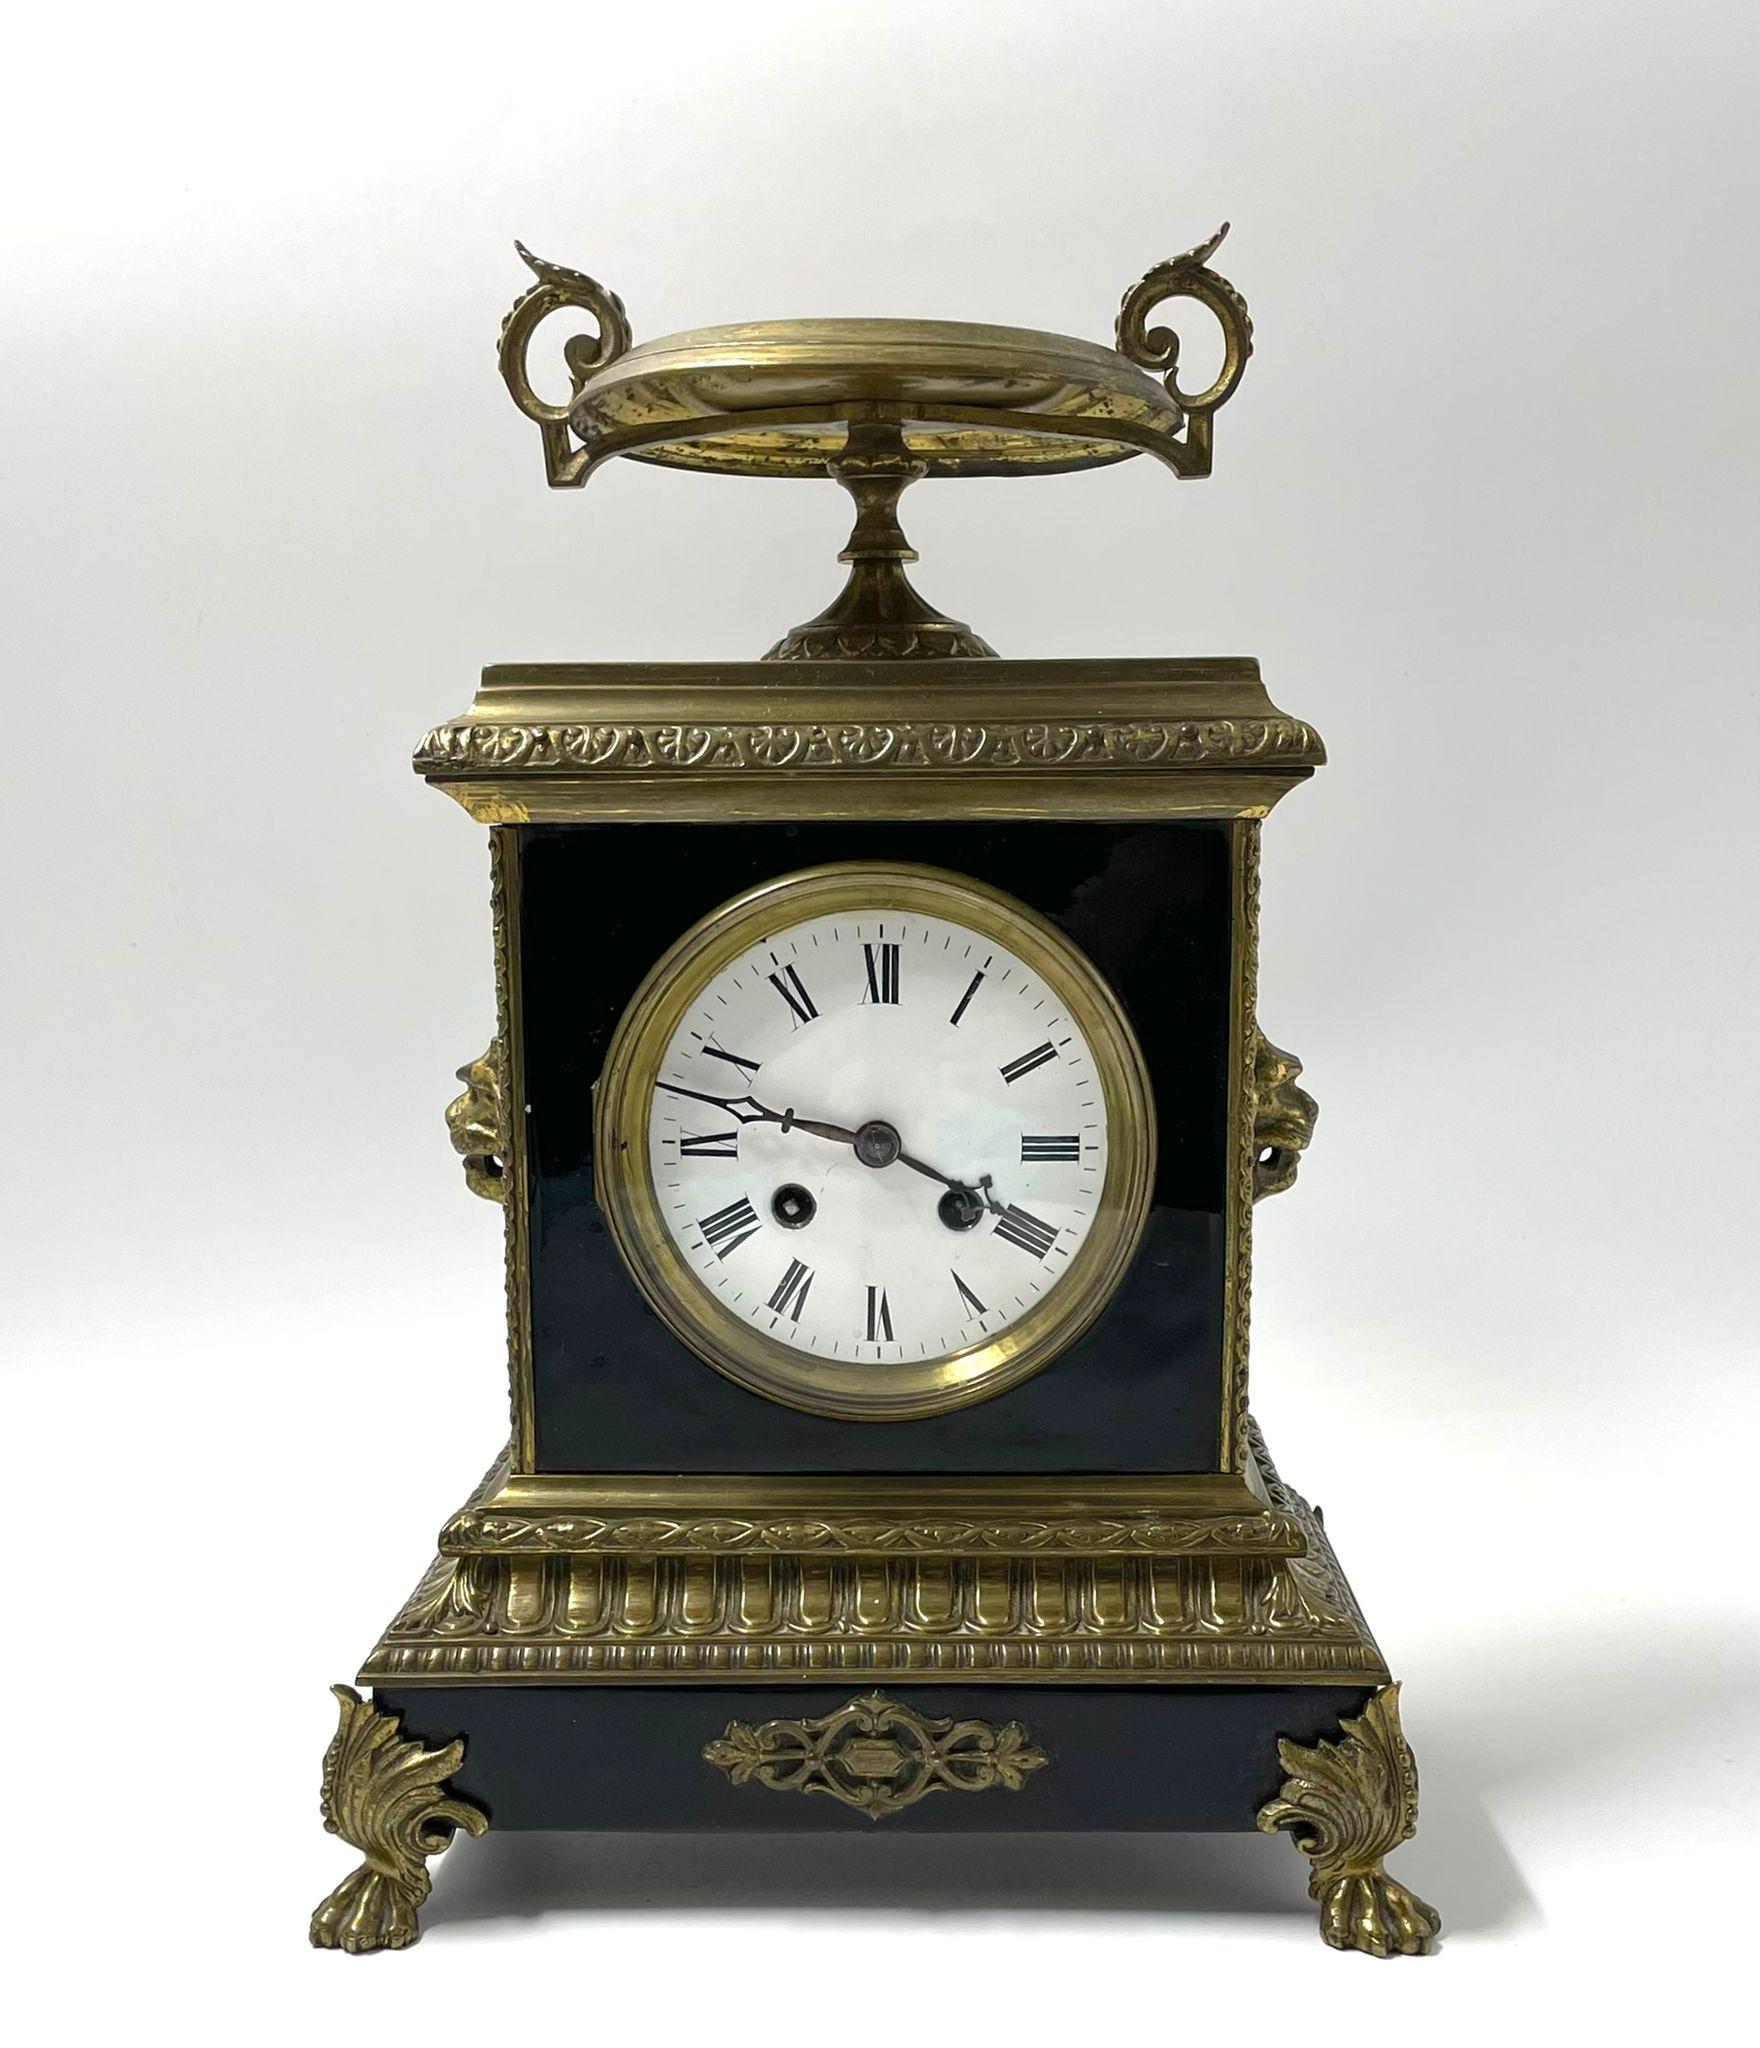 Eine schöne französische Napoleon-III-Manteluhr aus dem 19. Jahrhundert von guter Qualität.
Schwarzes Emaille und vergoldete Bronzegehäuse, Löwenmasken an den Seiten auf Krallenfüßen. Die Uhr und die Schlagglocke funktionieren perfekt, mit Schlüssel